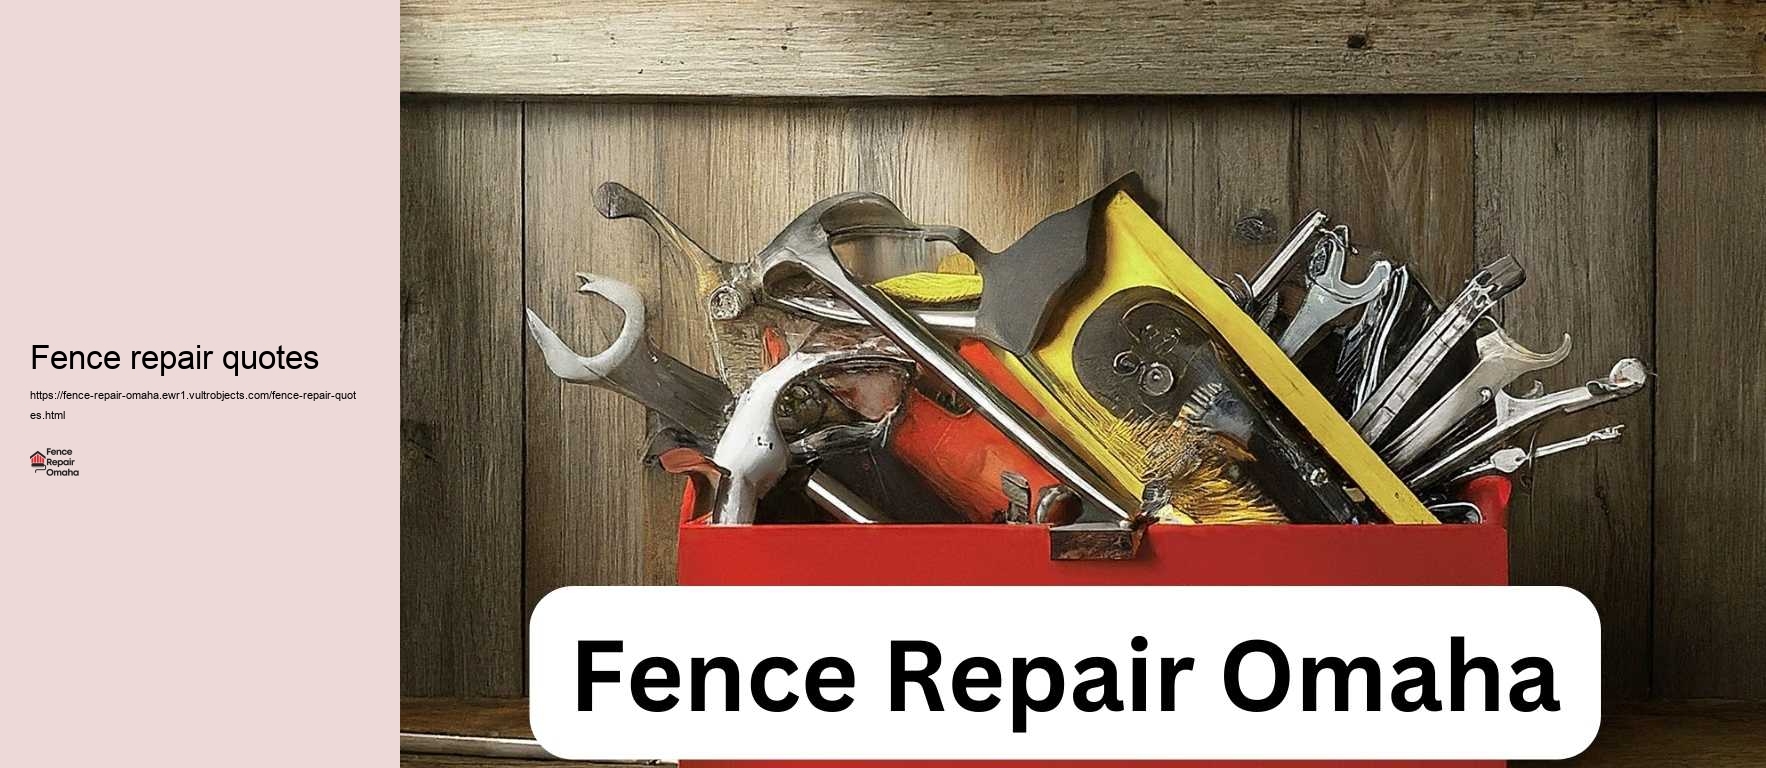 Fence repair quotes